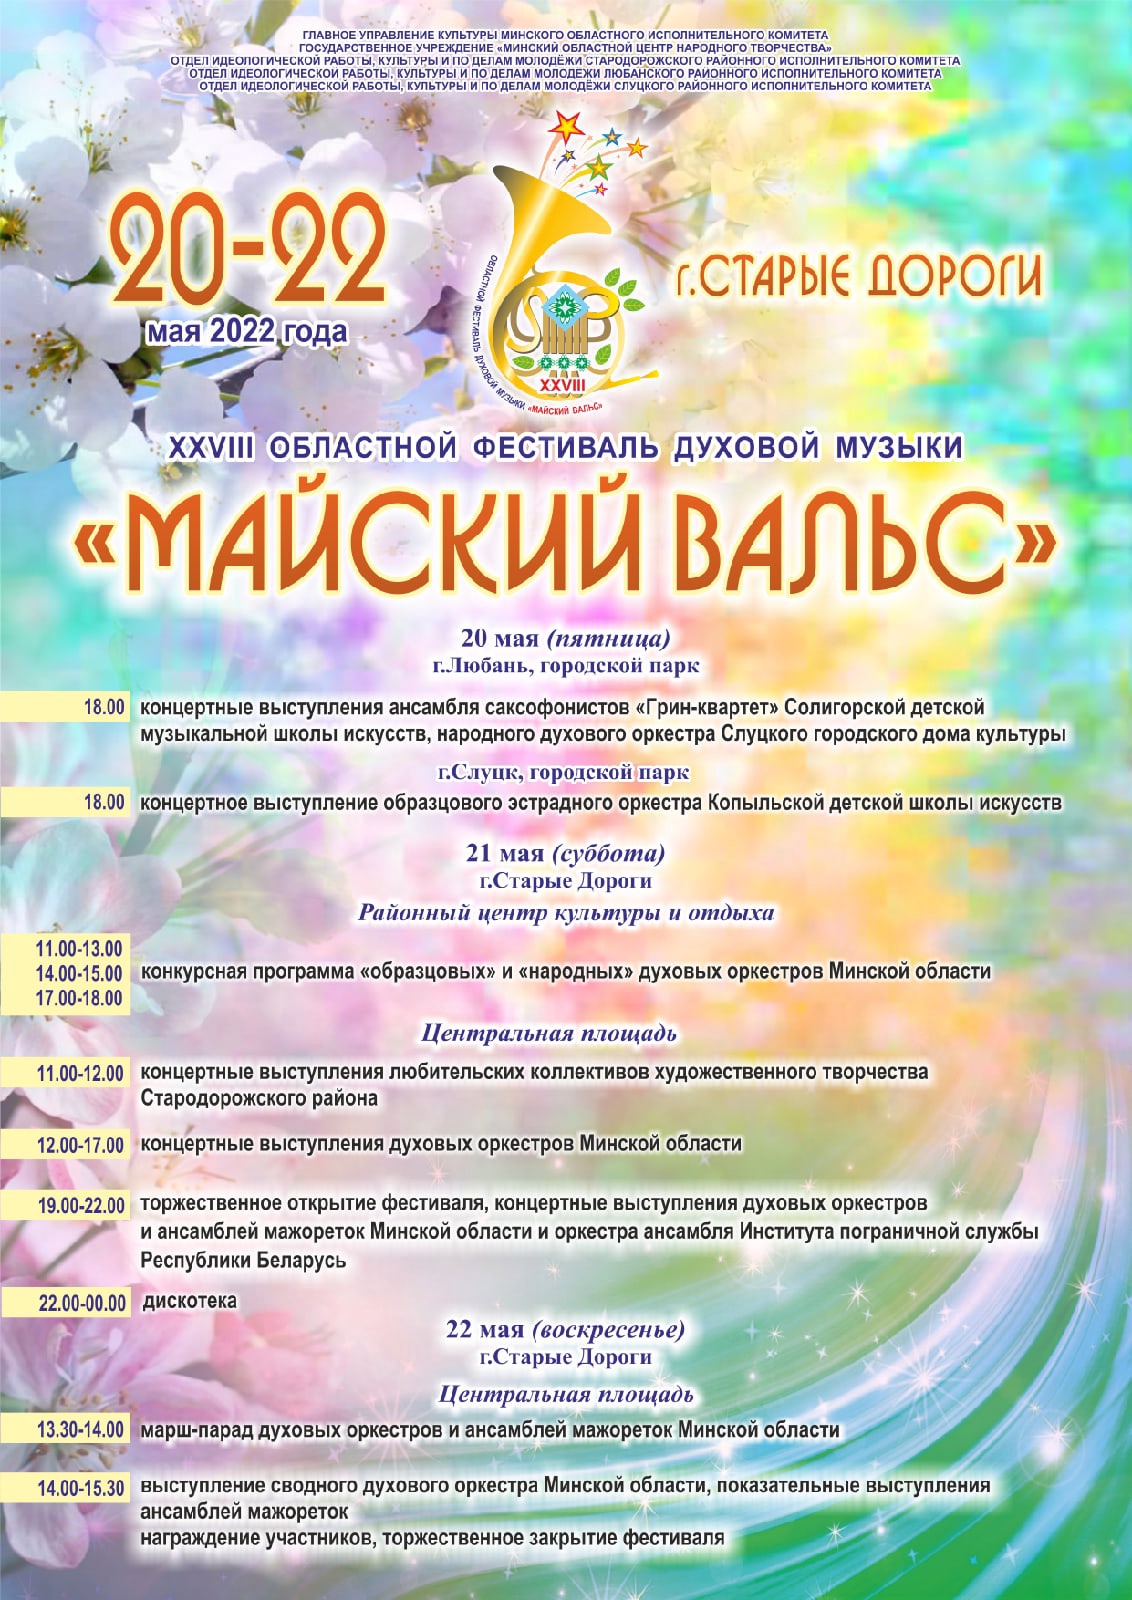 20-22 мая в городах Любань, Слуцк, Старые Дороги состоится XXVIII фестиваль духовой музыки «Майский вальс»